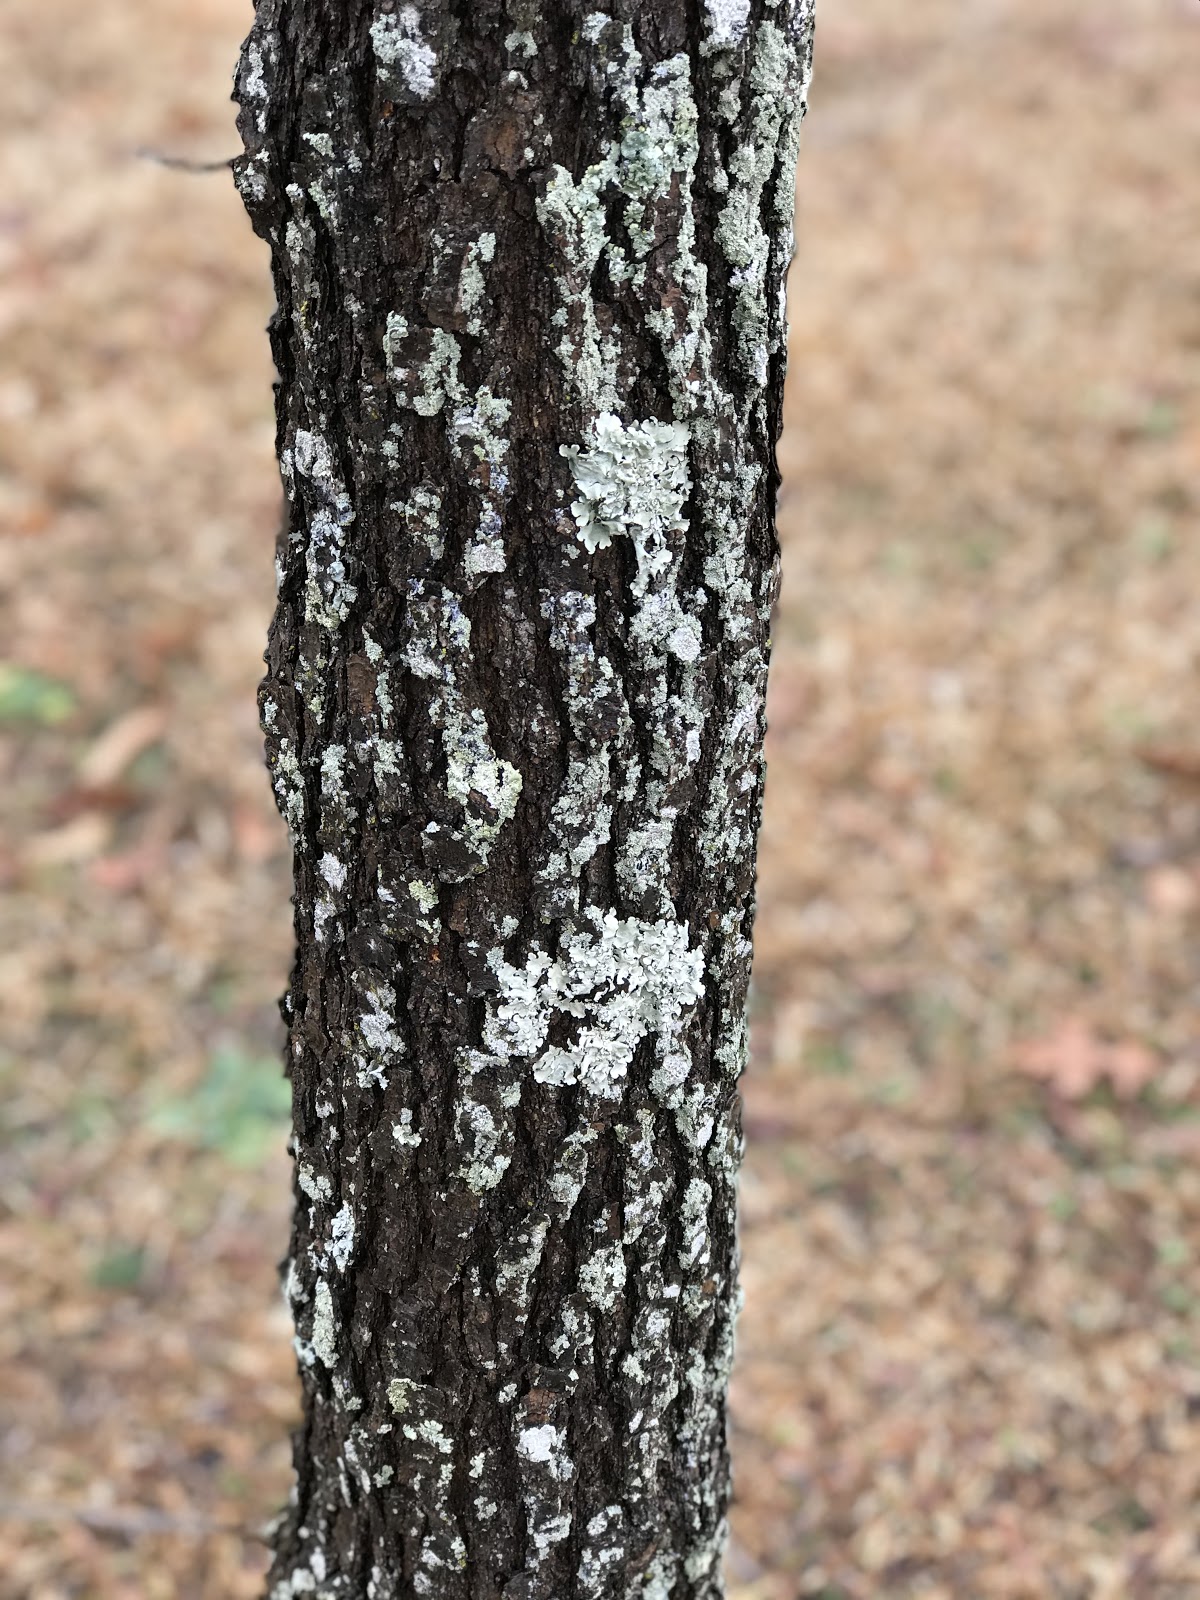 Lichen on trunk